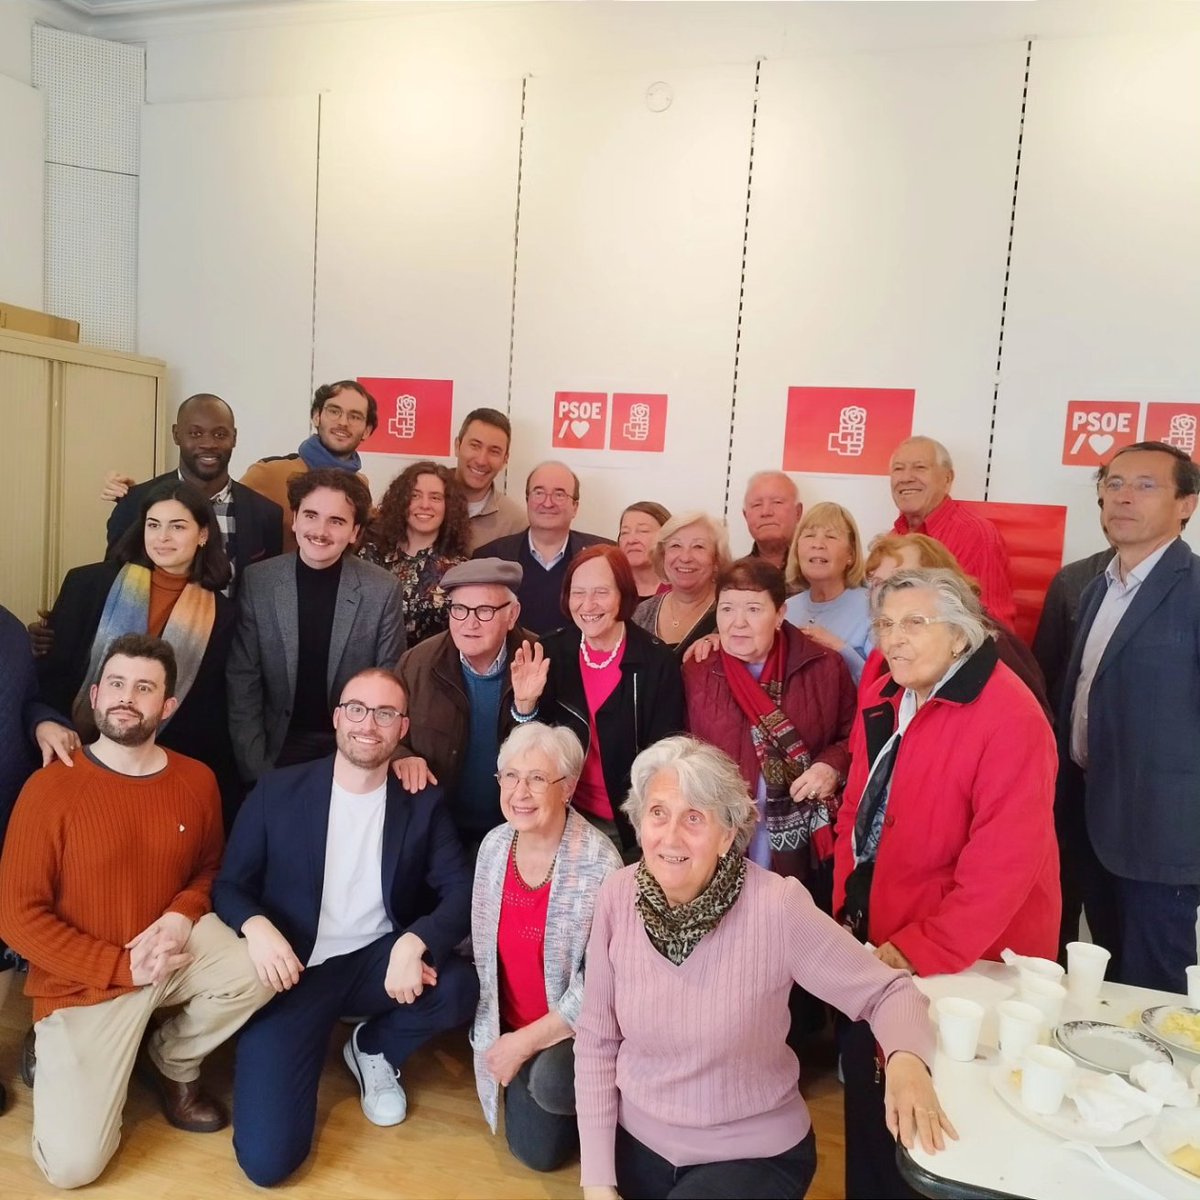 Muy felices por compartir una tarde maravillosa con @miqueliceta y @PedroIR_ en la Casa del Pueblo de #París. 

Todo el apoyo a @salvadorilla y a @socialistes_cat. #UniryServir